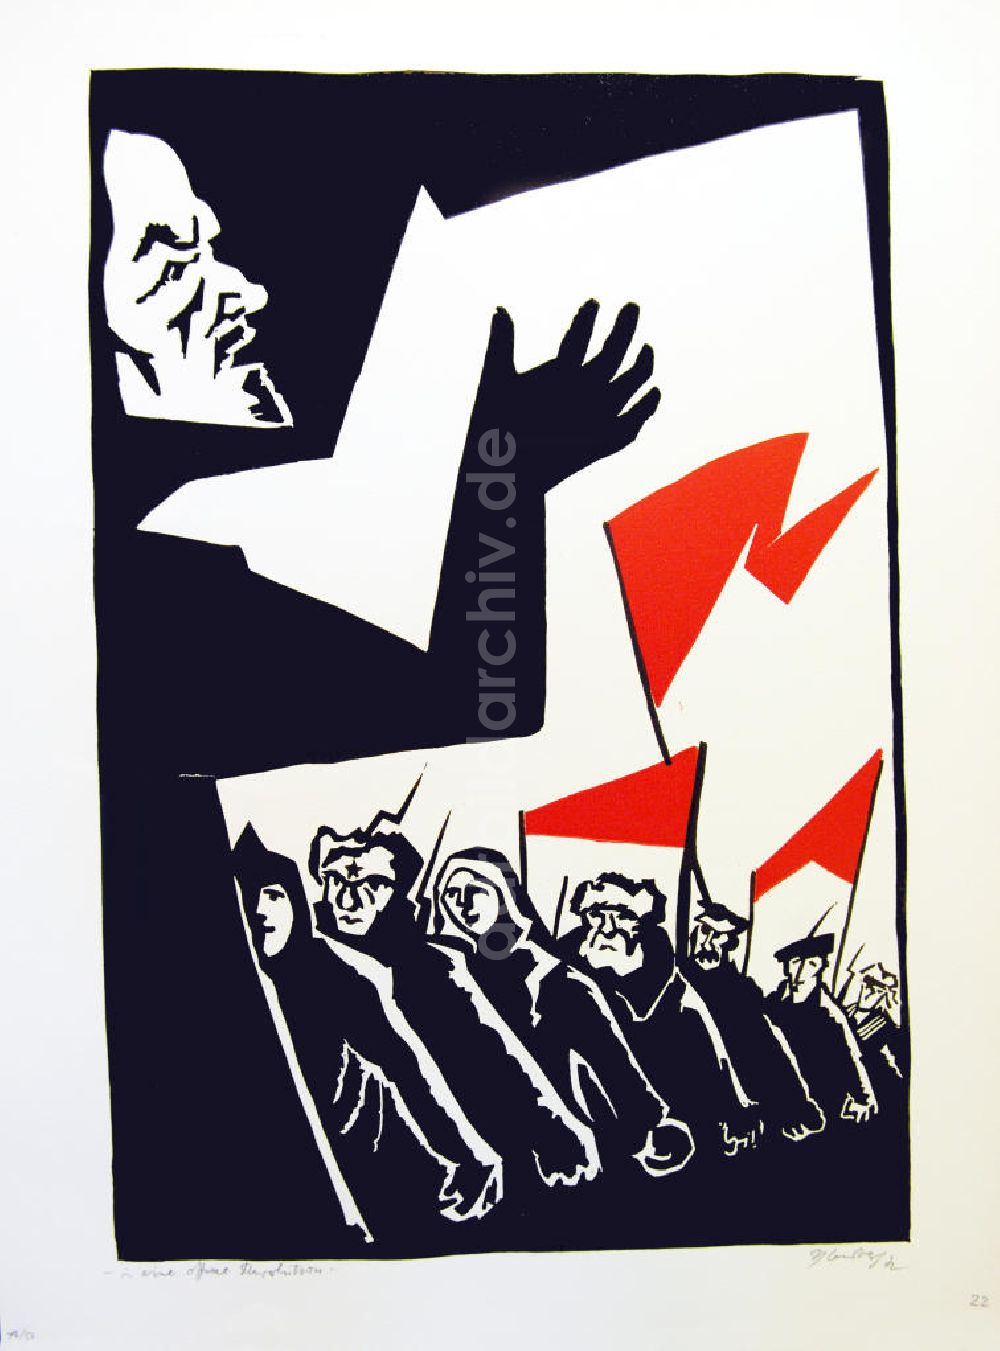 DDR-Bildarchiv: Berlin - Grafik von Herbert Sandberg Motiv 20 aus dem Zyklus Bilder zum Kommunistischen Manifest aus dem Jahr 1972